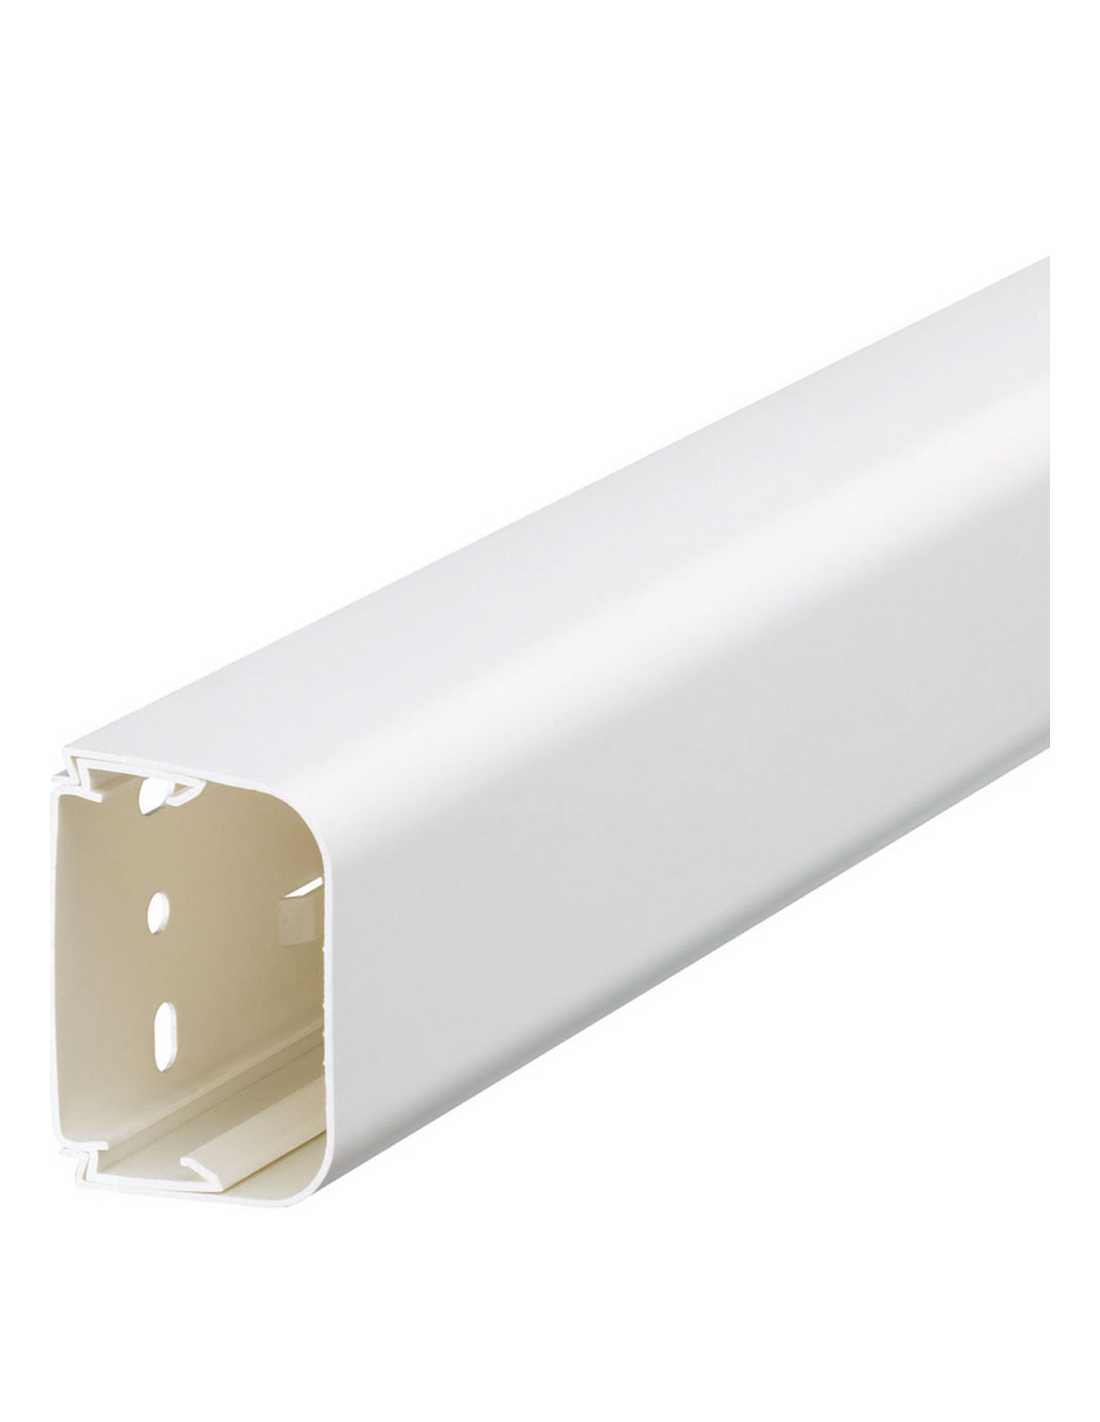 Goulotte de climatisation PVC rigide blanc PALOMA